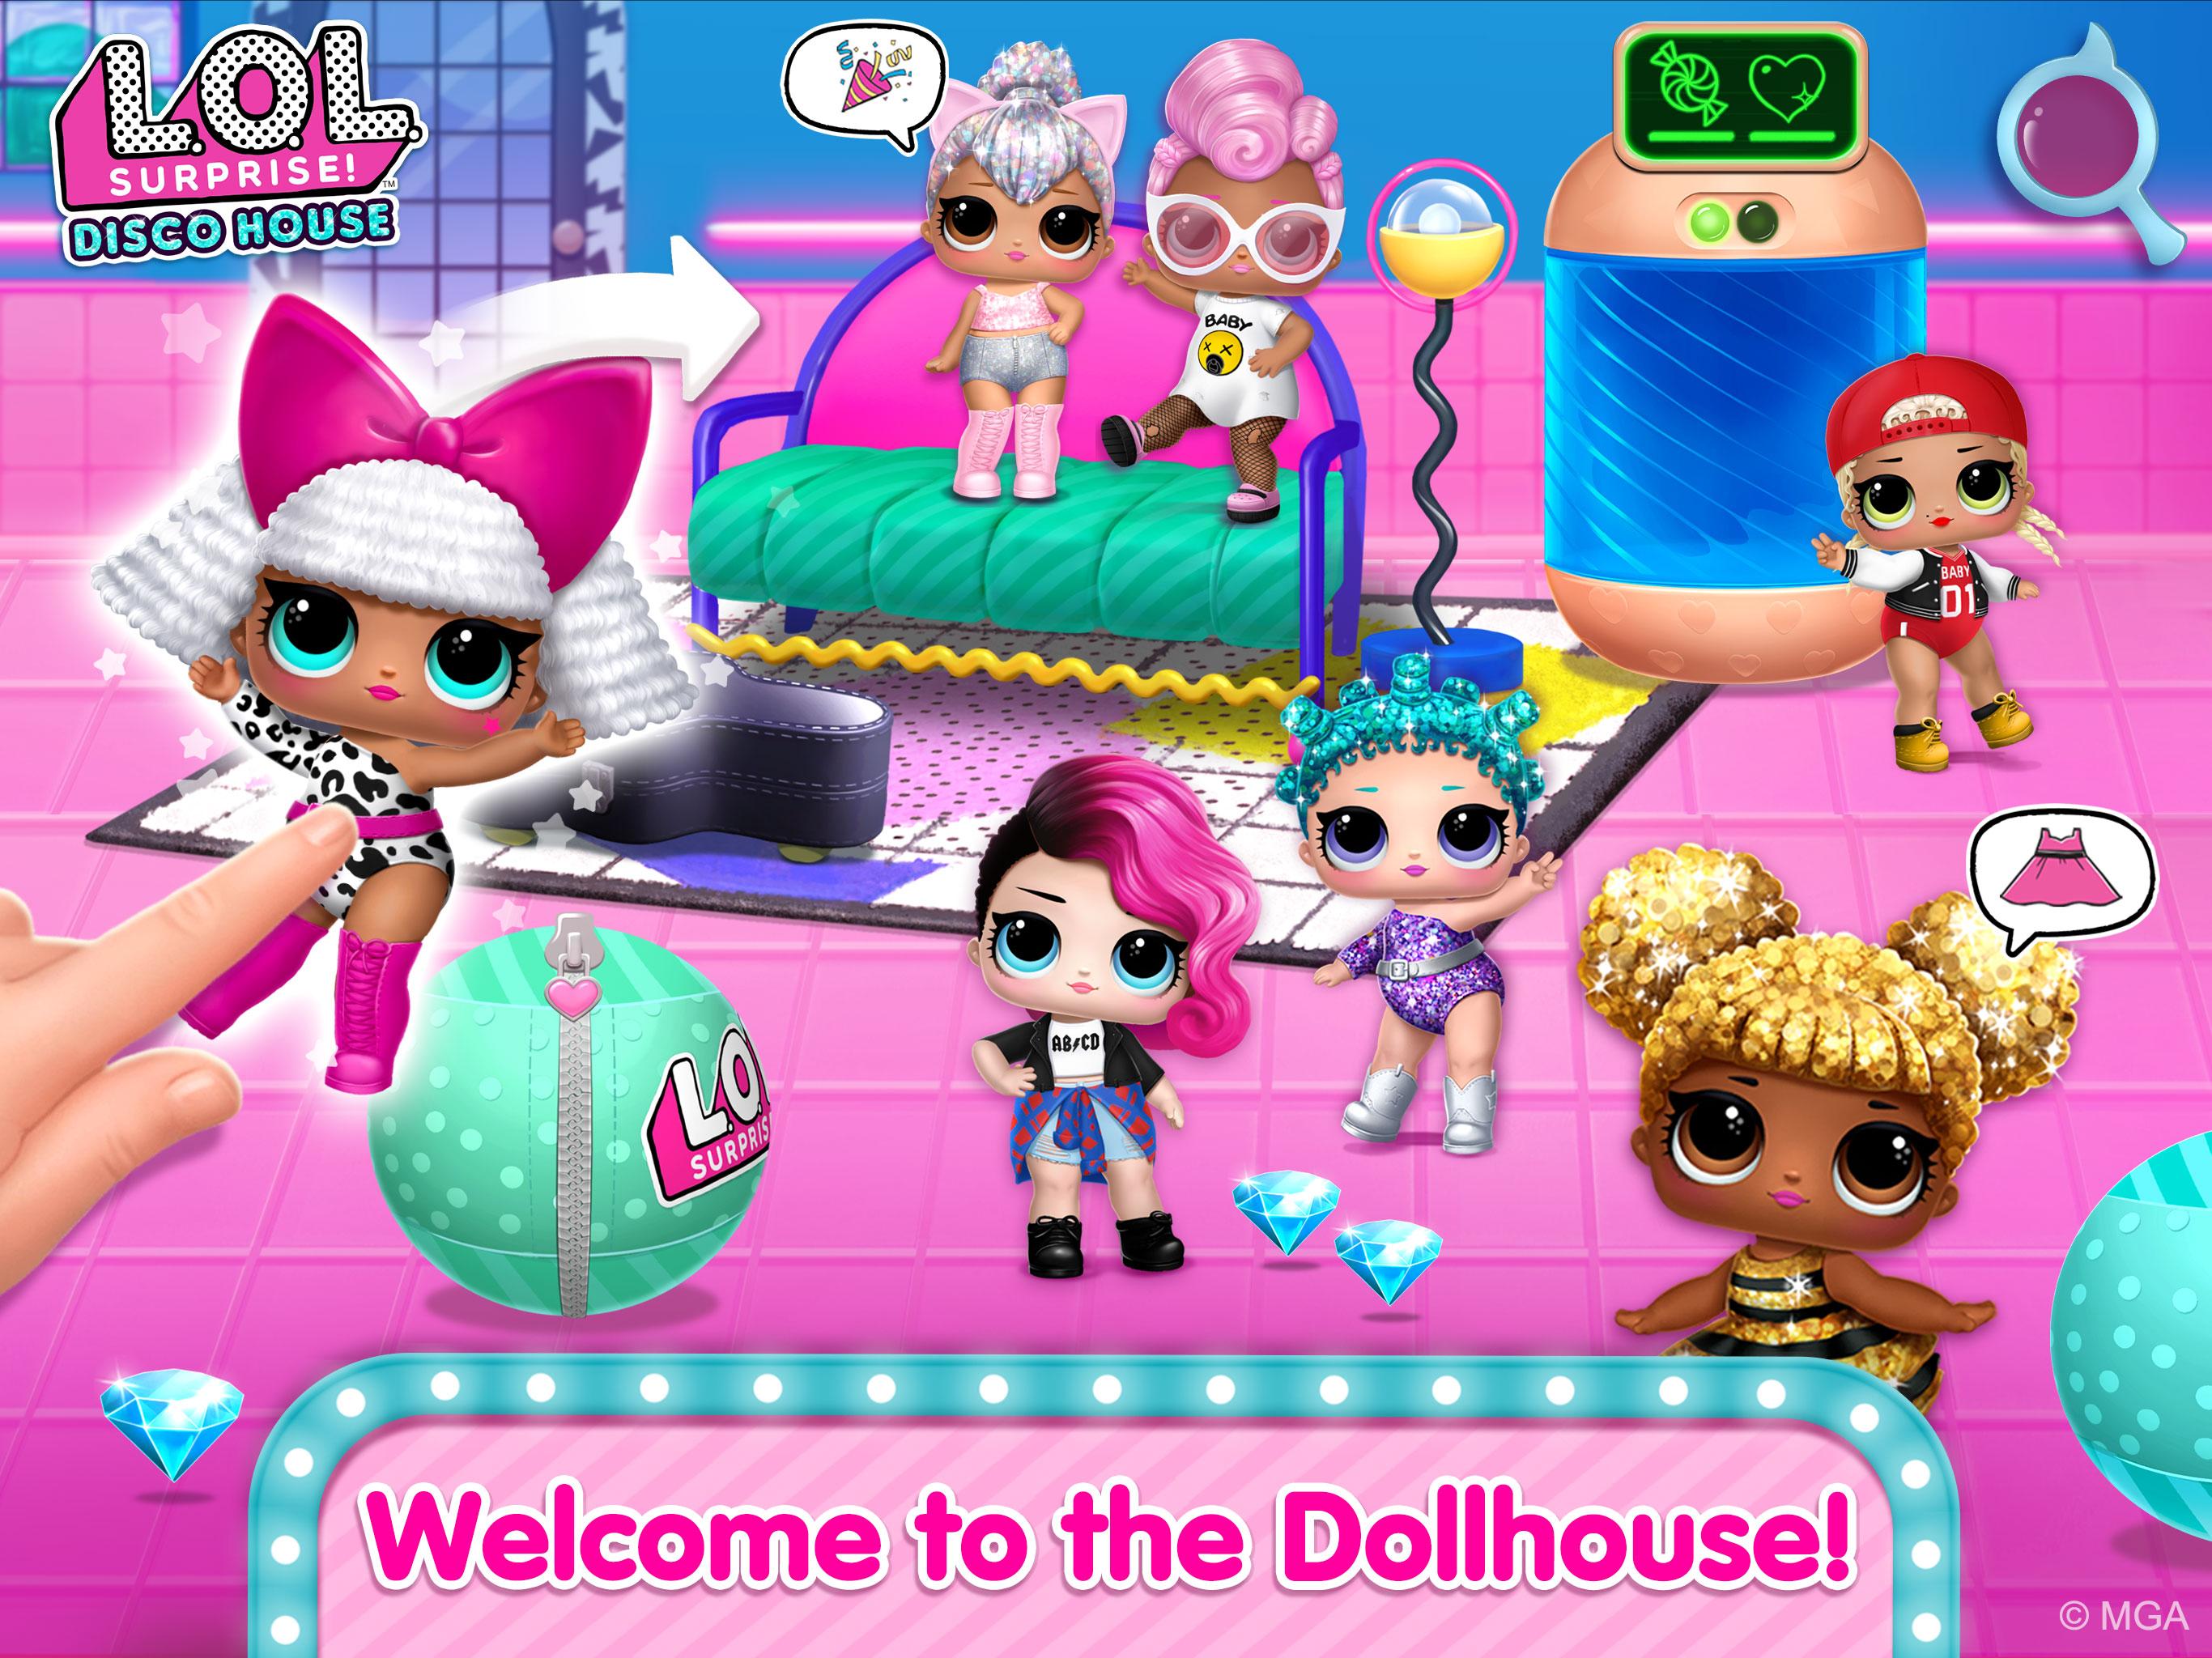 L.O.L. Surprise! Disco House – Collect Cute Dolls 1.0.10 Screenshot 17